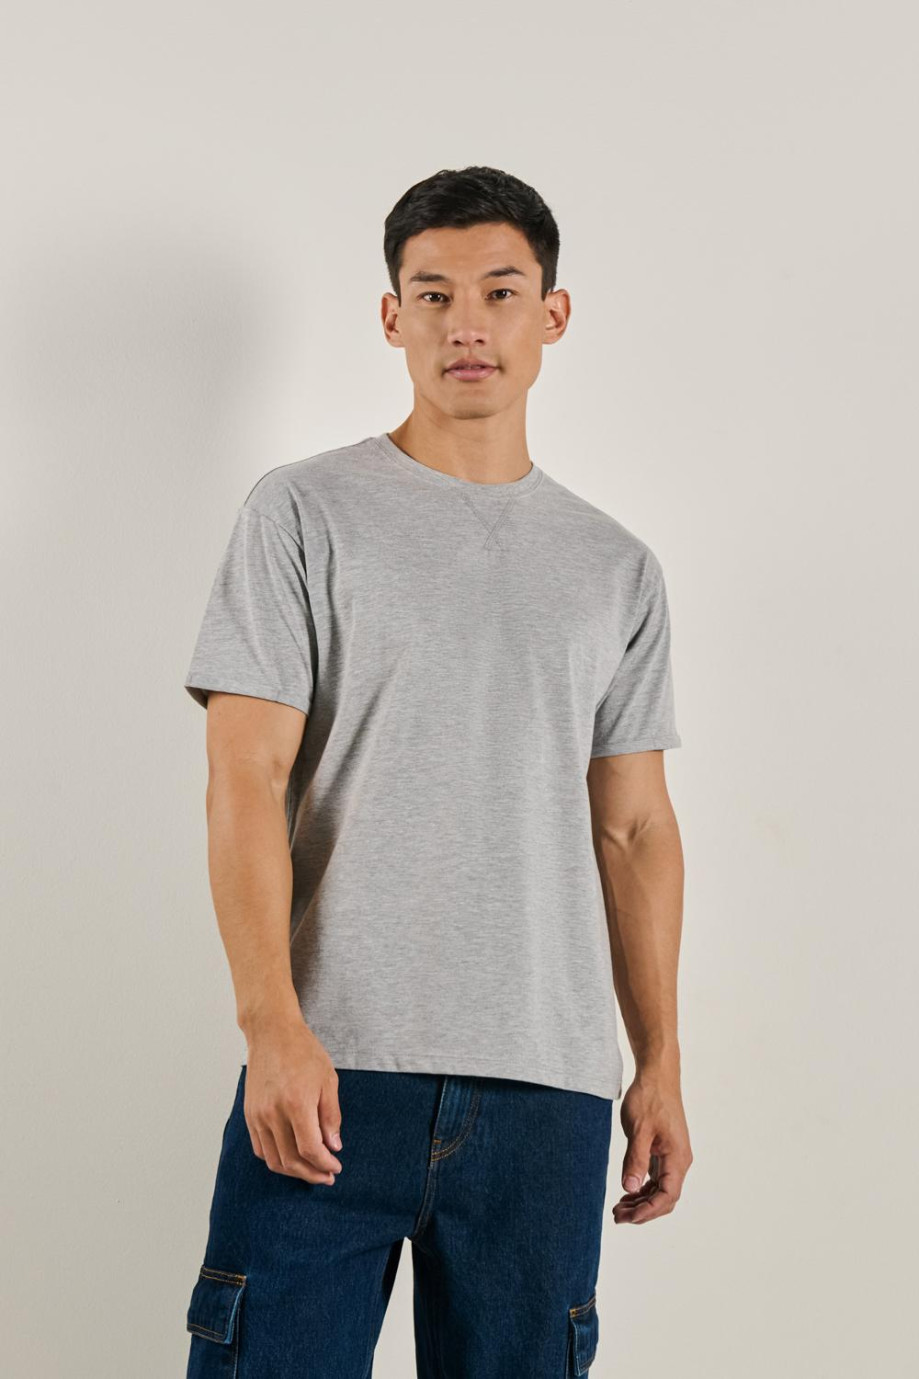 Camiseta en algodón manga corta unicolor para hombre, doblez en mangas y pespunte en frente.